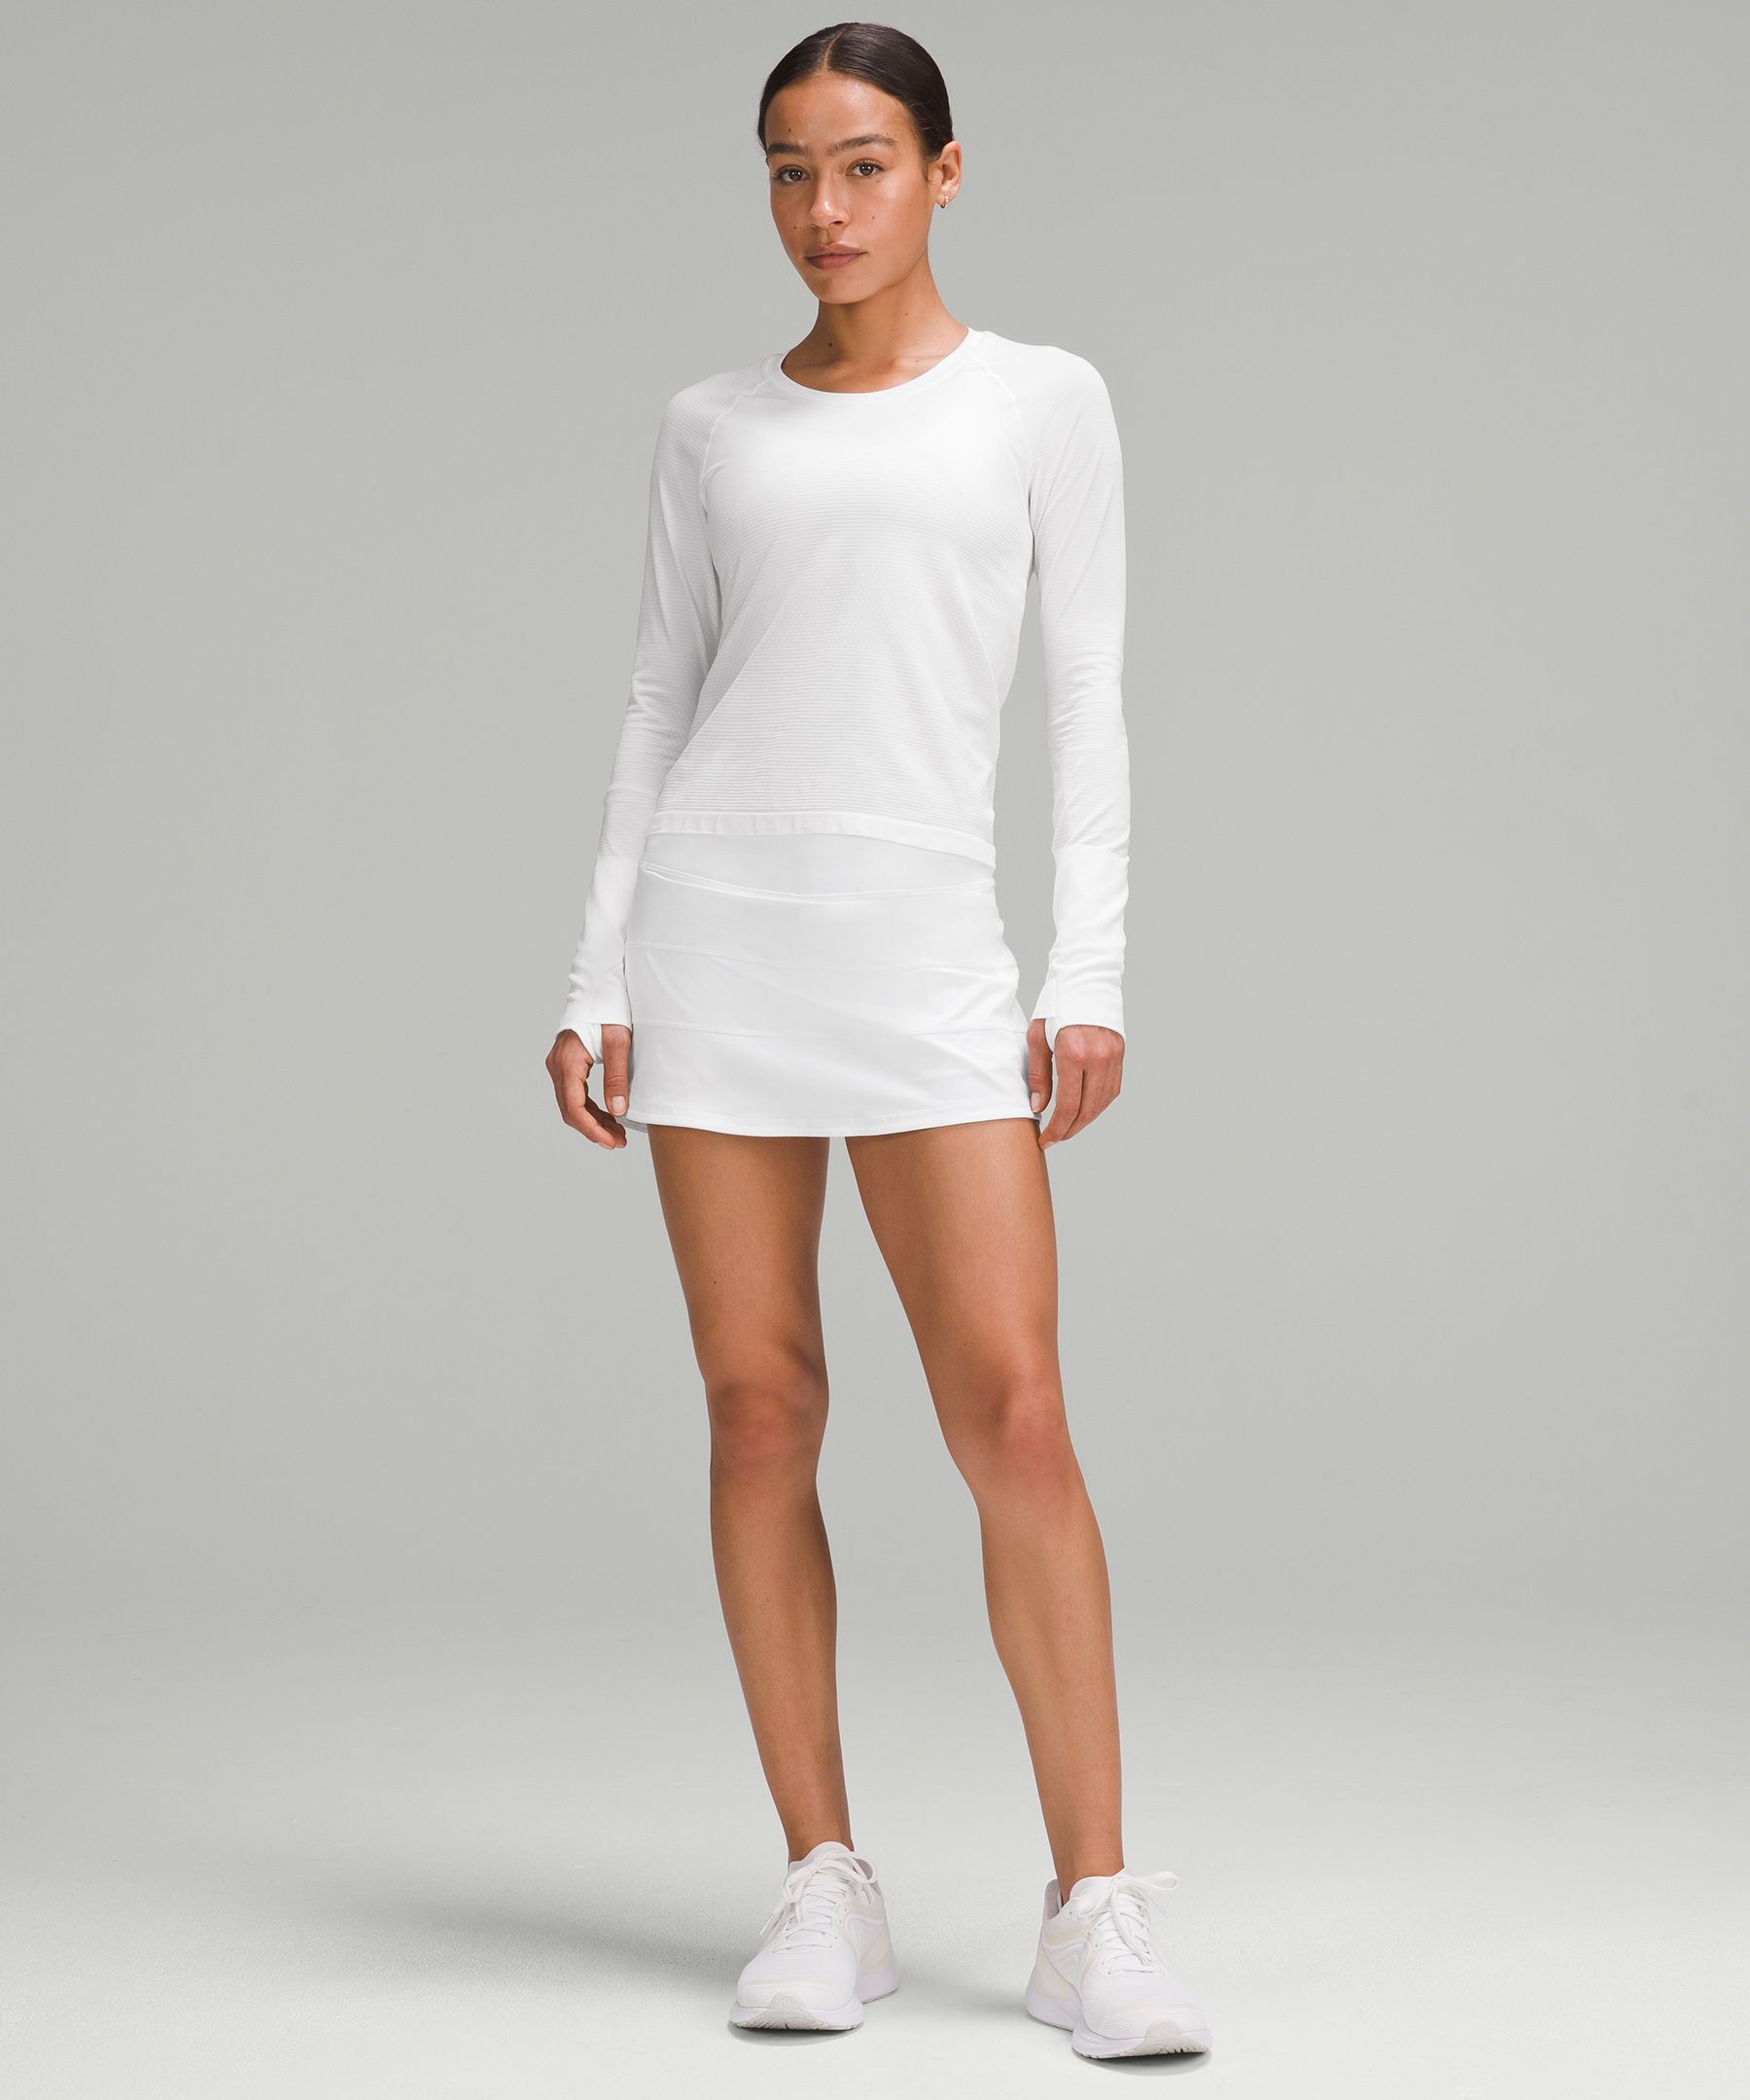 white tennis skirt lululemon